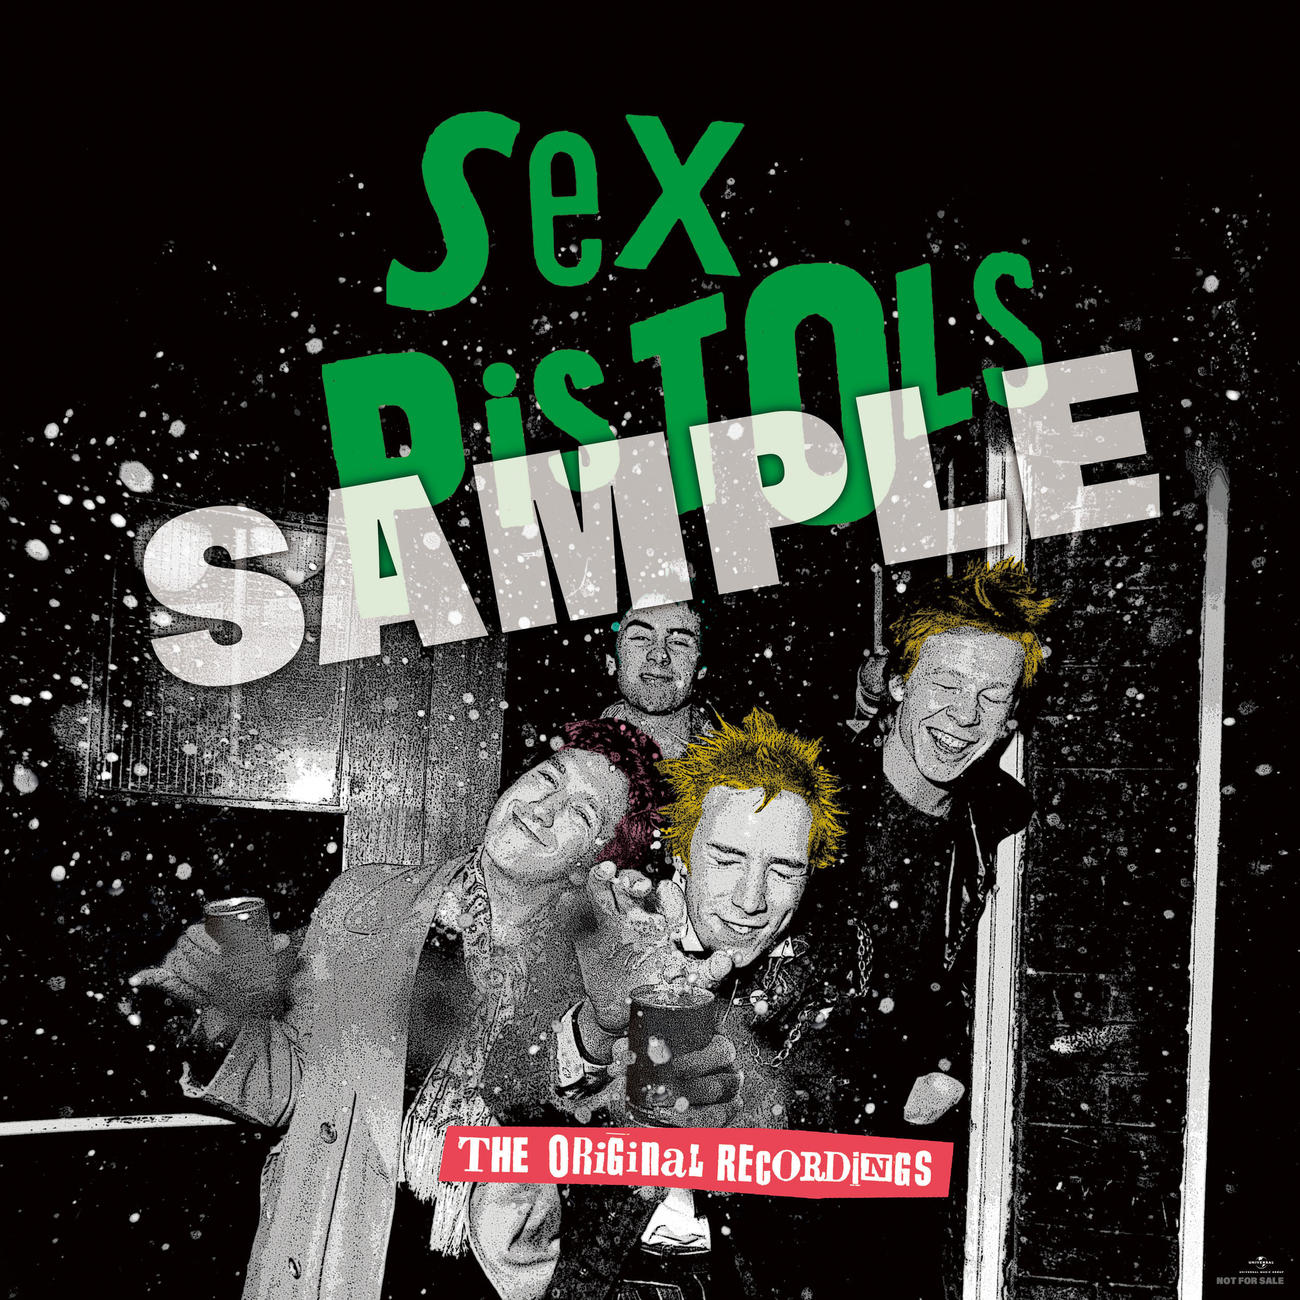 セックス・ピストルズの新コンピレーションアルバム「オリジナル・レコーディングス」日本盤CDの先着購入者特典のステッカー